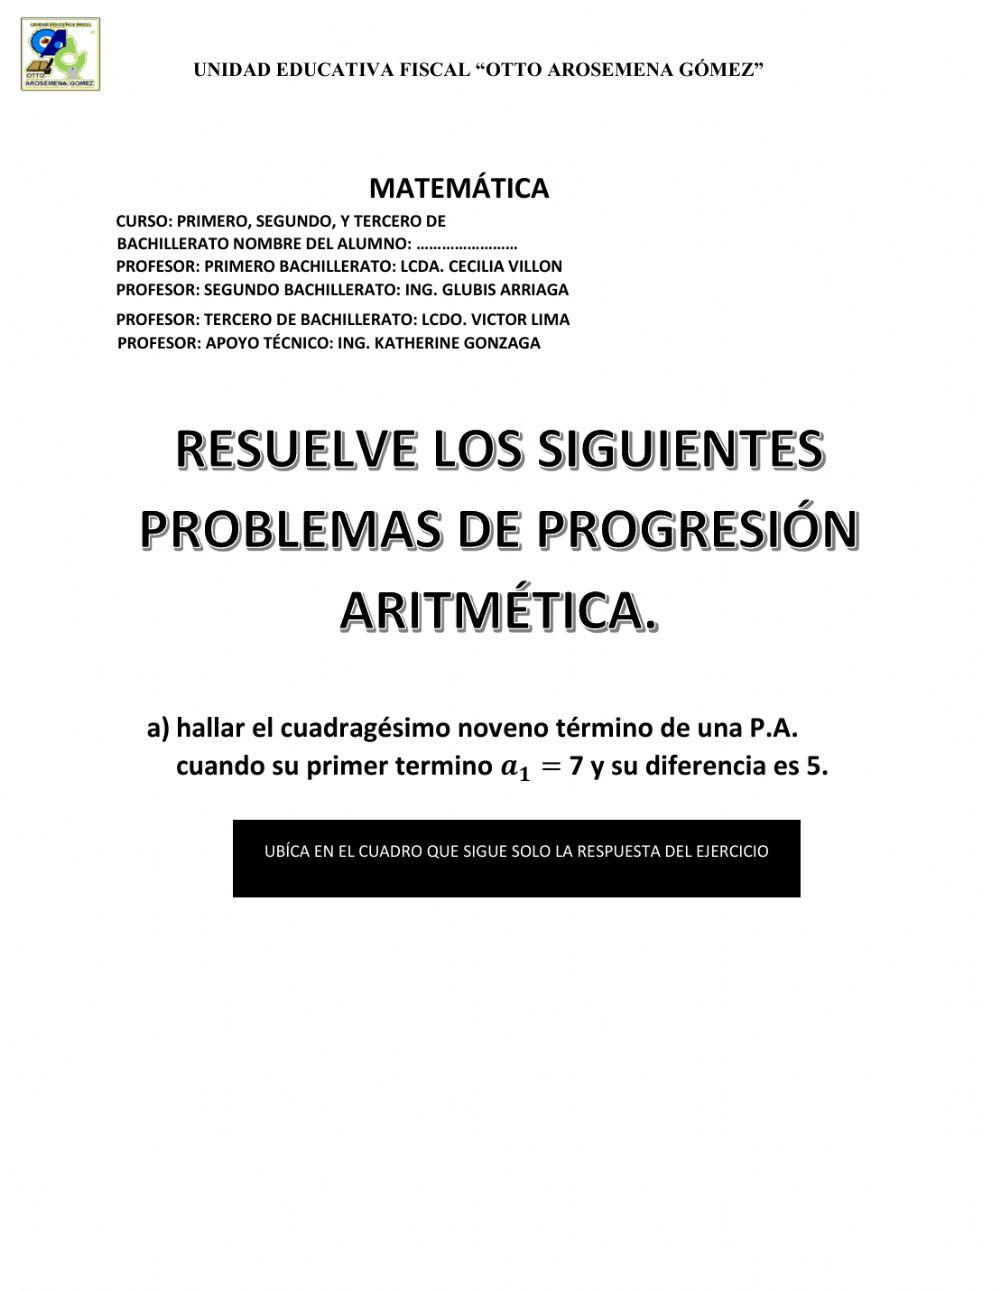 Progresiones aritmeticas